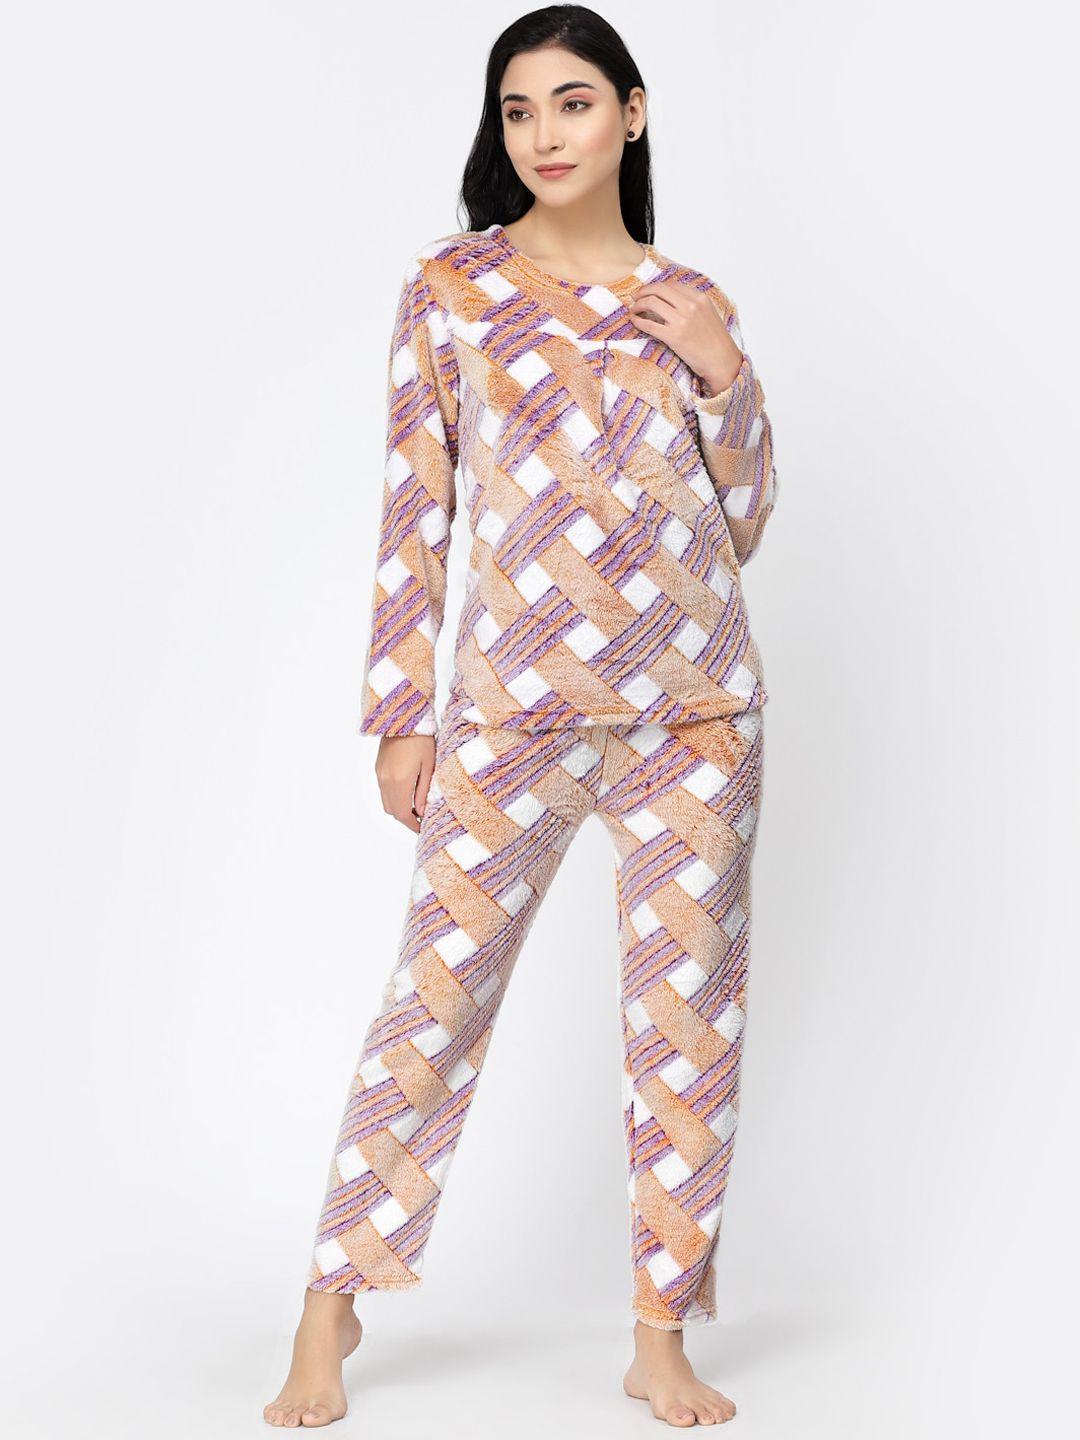 klotthe geometric printed night suit